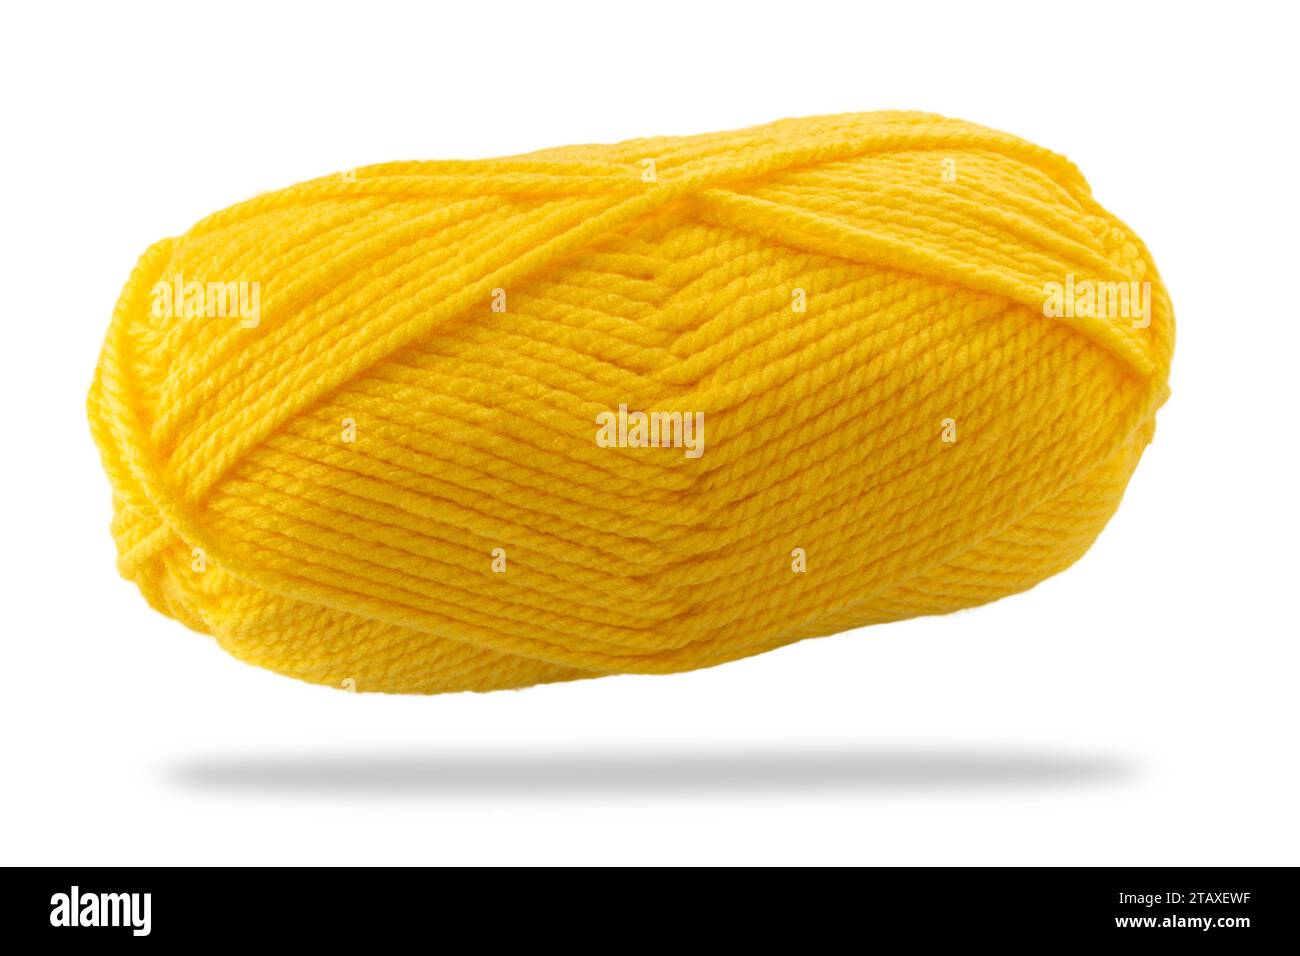 Kugel aus gelb gefärbtem Wollgarn isoliert auf weiß mit Schnittpfad enthalten Stockfoto